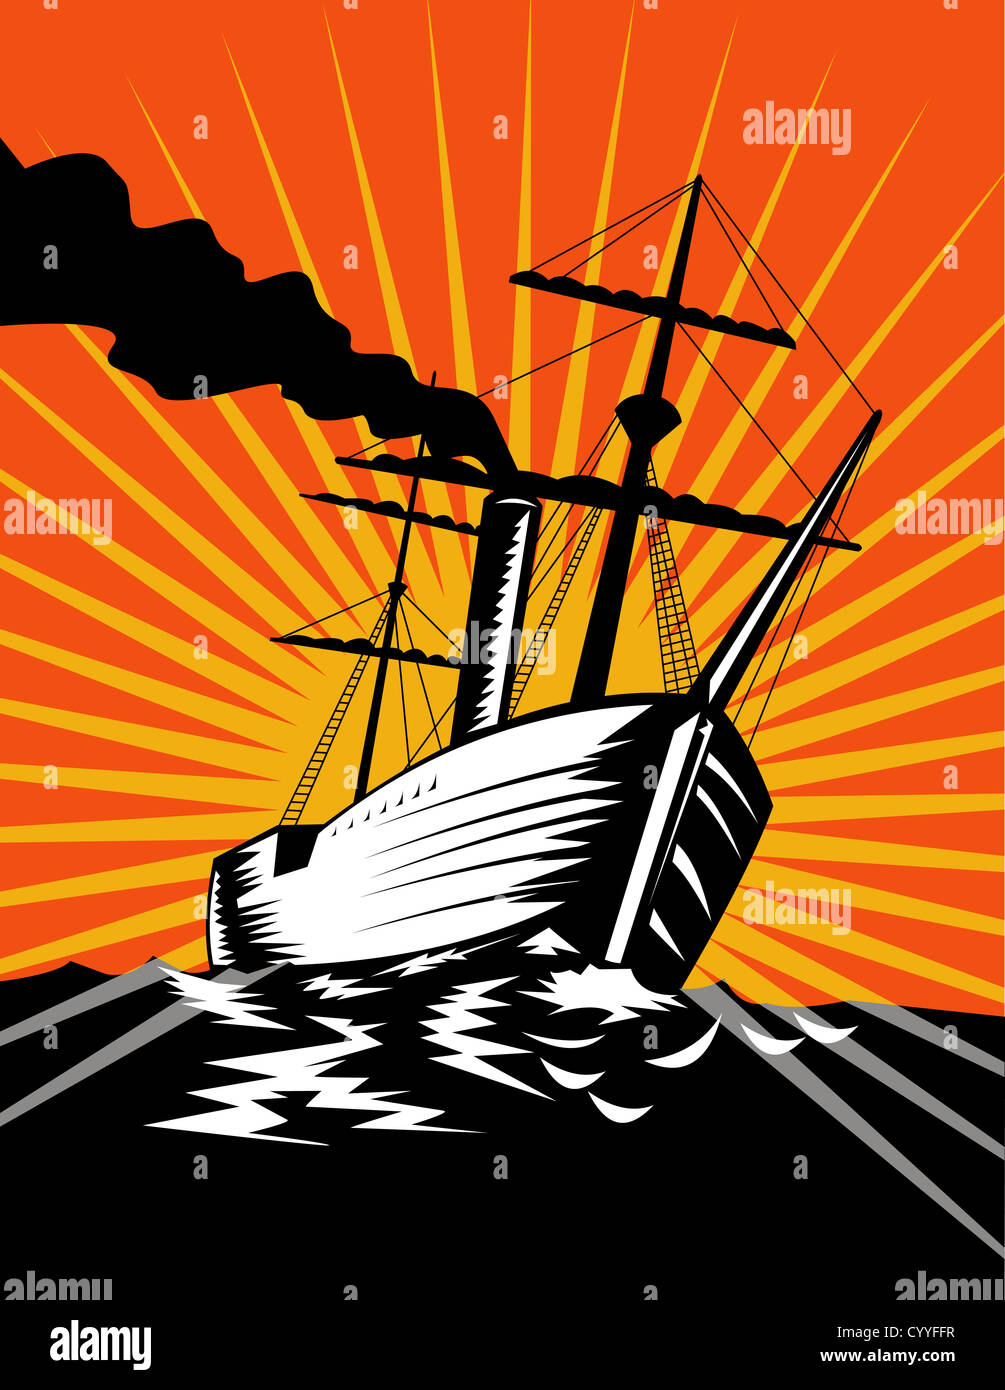 Illustrazione di un passeggero con una nave a vela realizzato in stile retrò Foto Stock